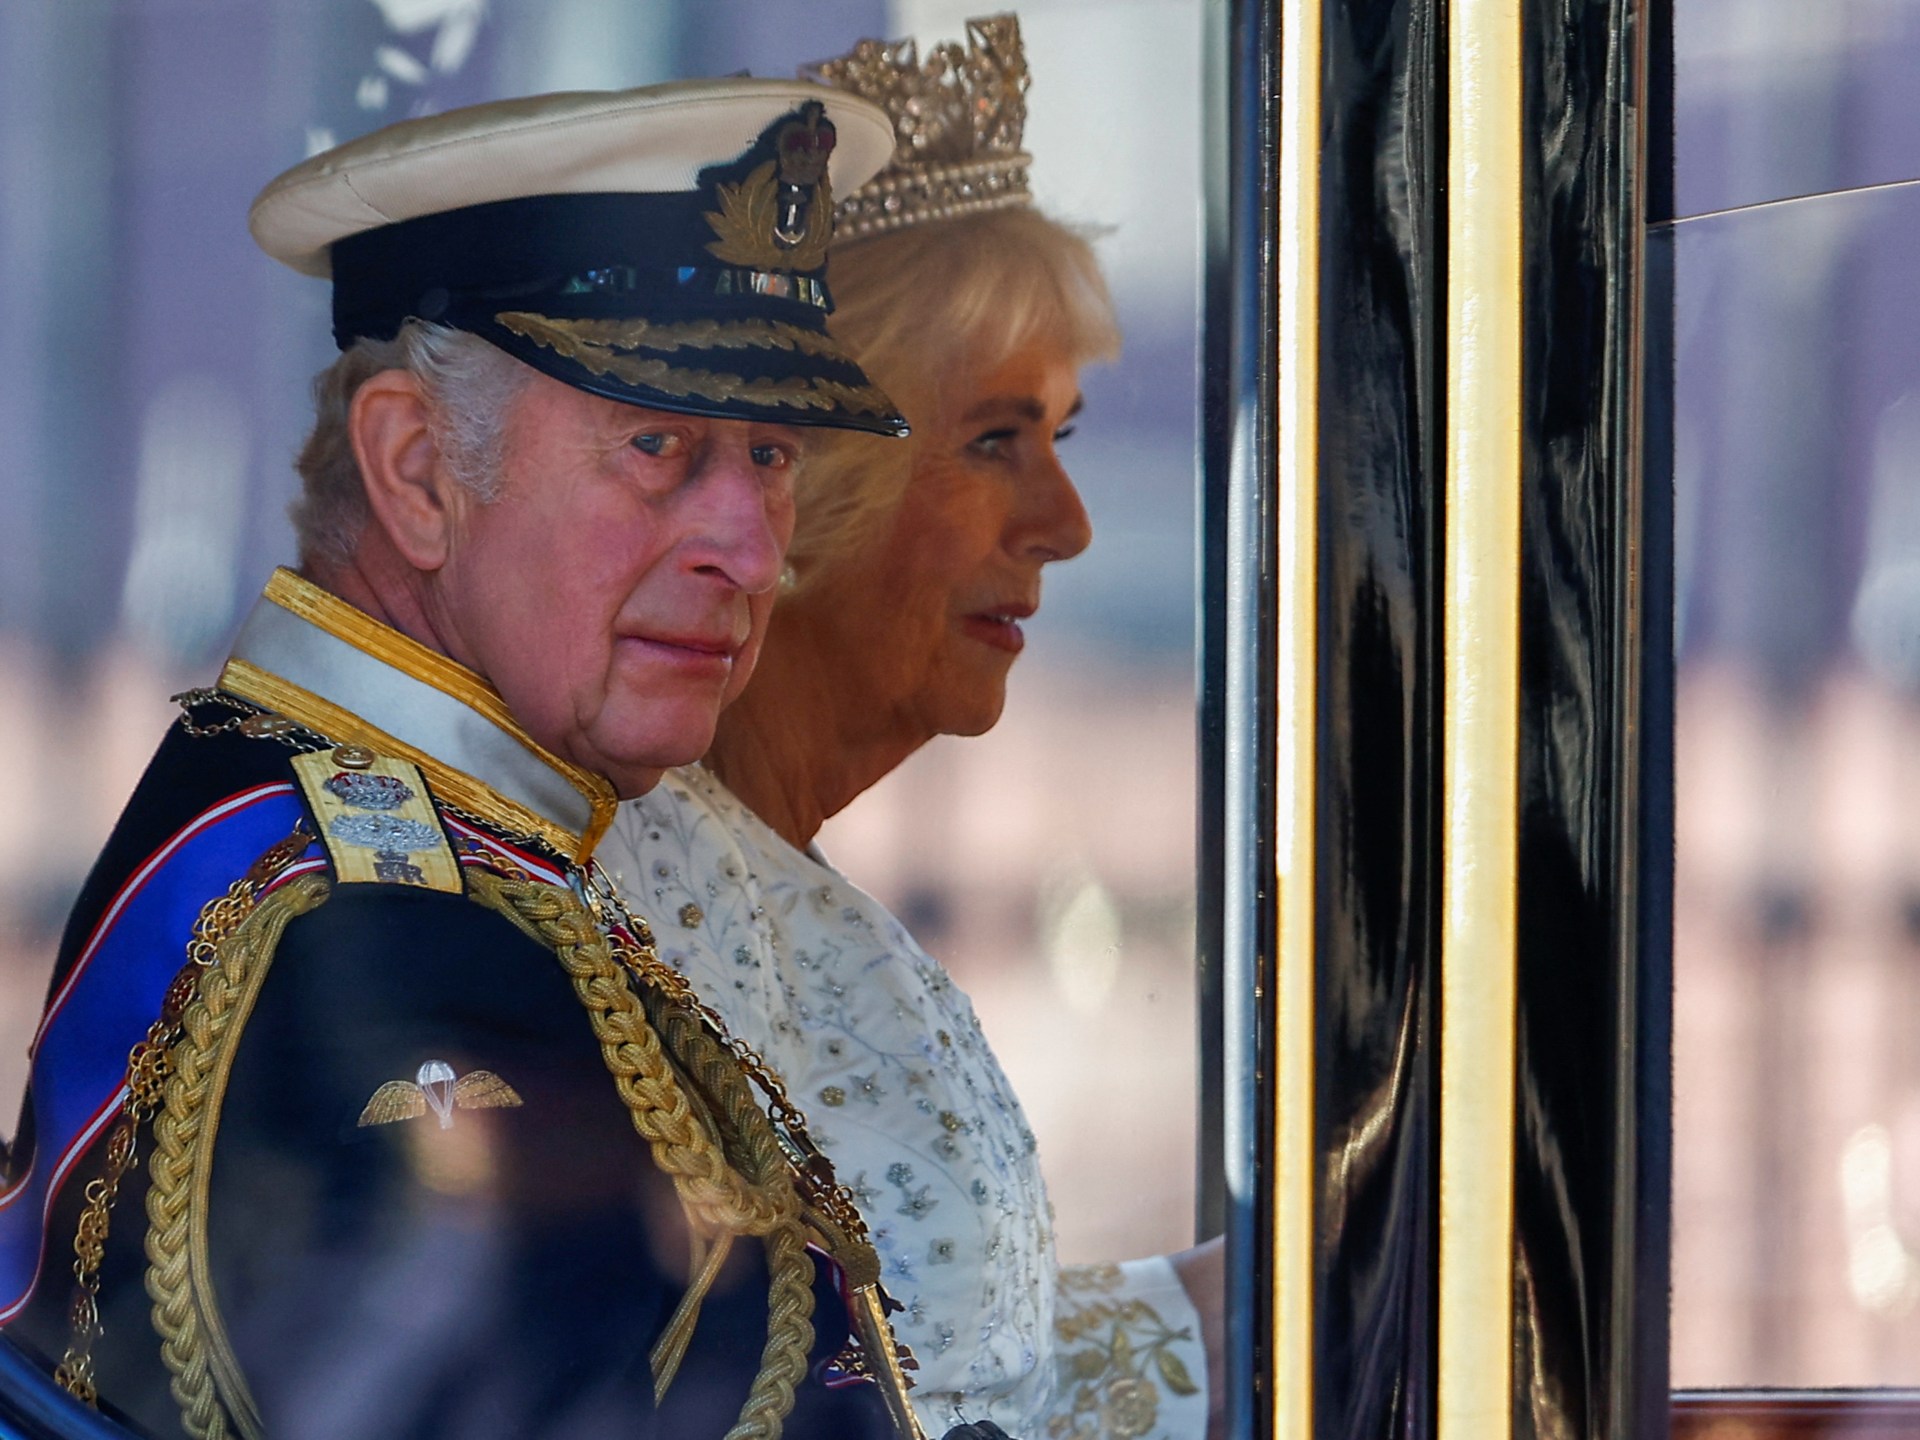 El rey Carlos de Gran Bretaña diagnosticado con cáncer: Palacio de Buckingham |  Noticias